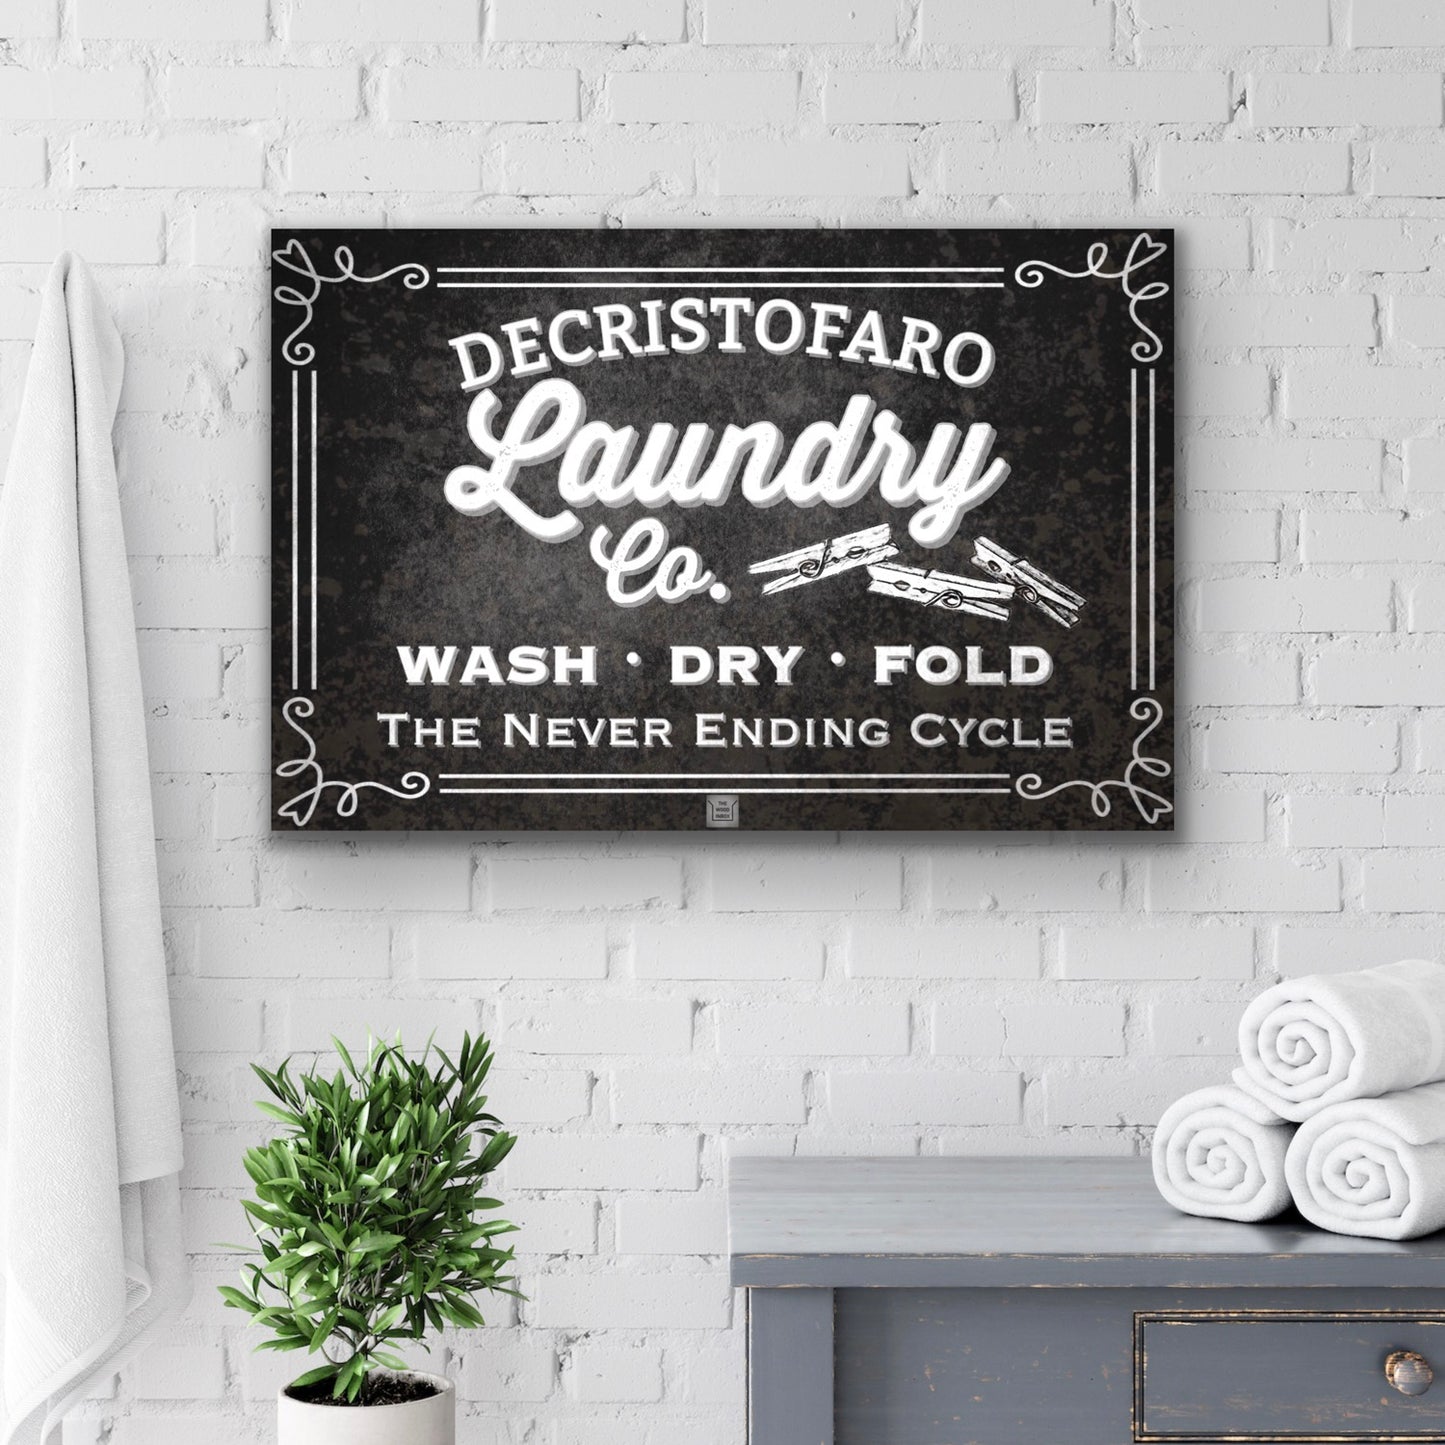 Black White Laundry Room Decor, Laundry Poster Frame